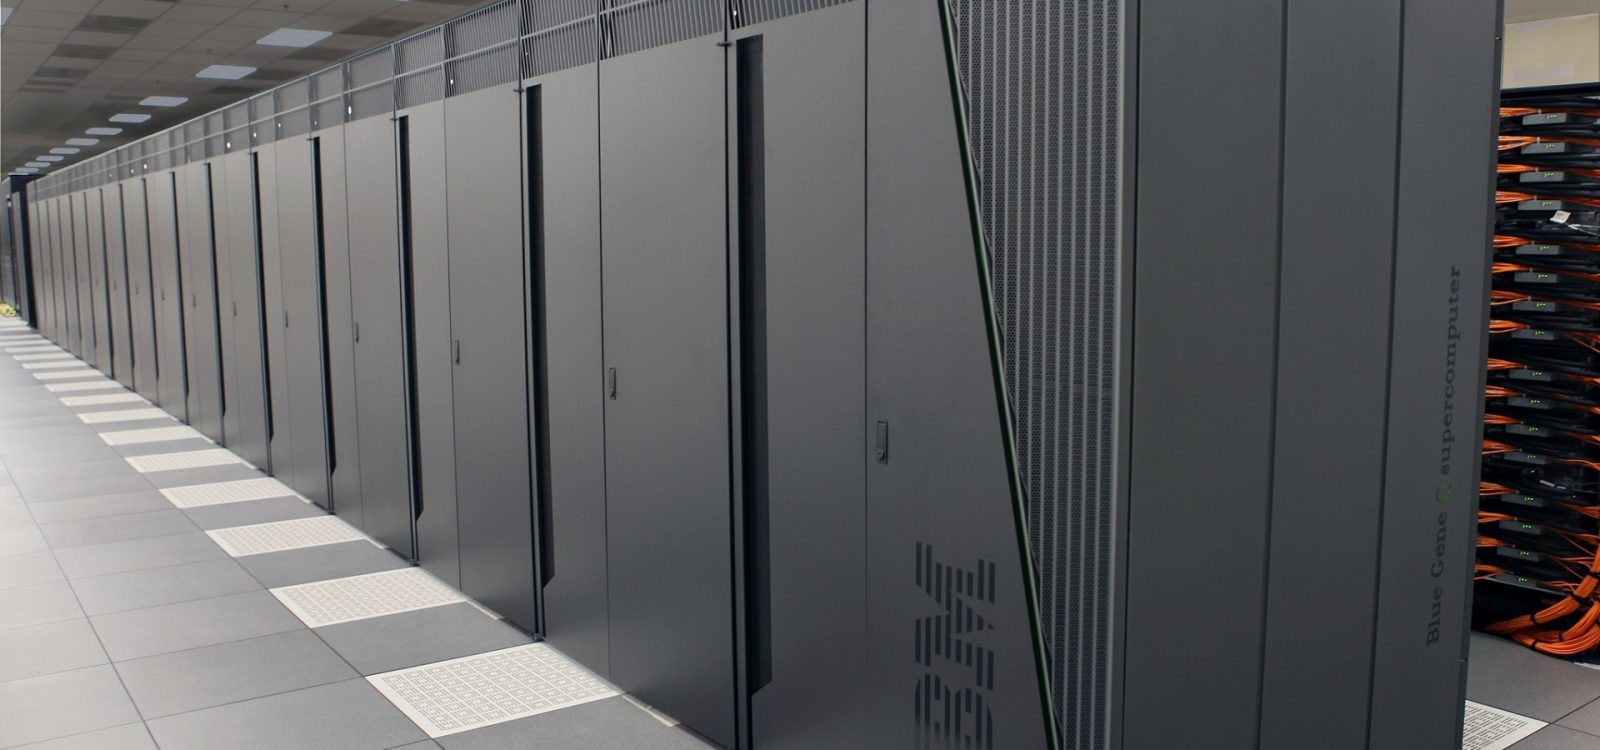 IBM Data Center